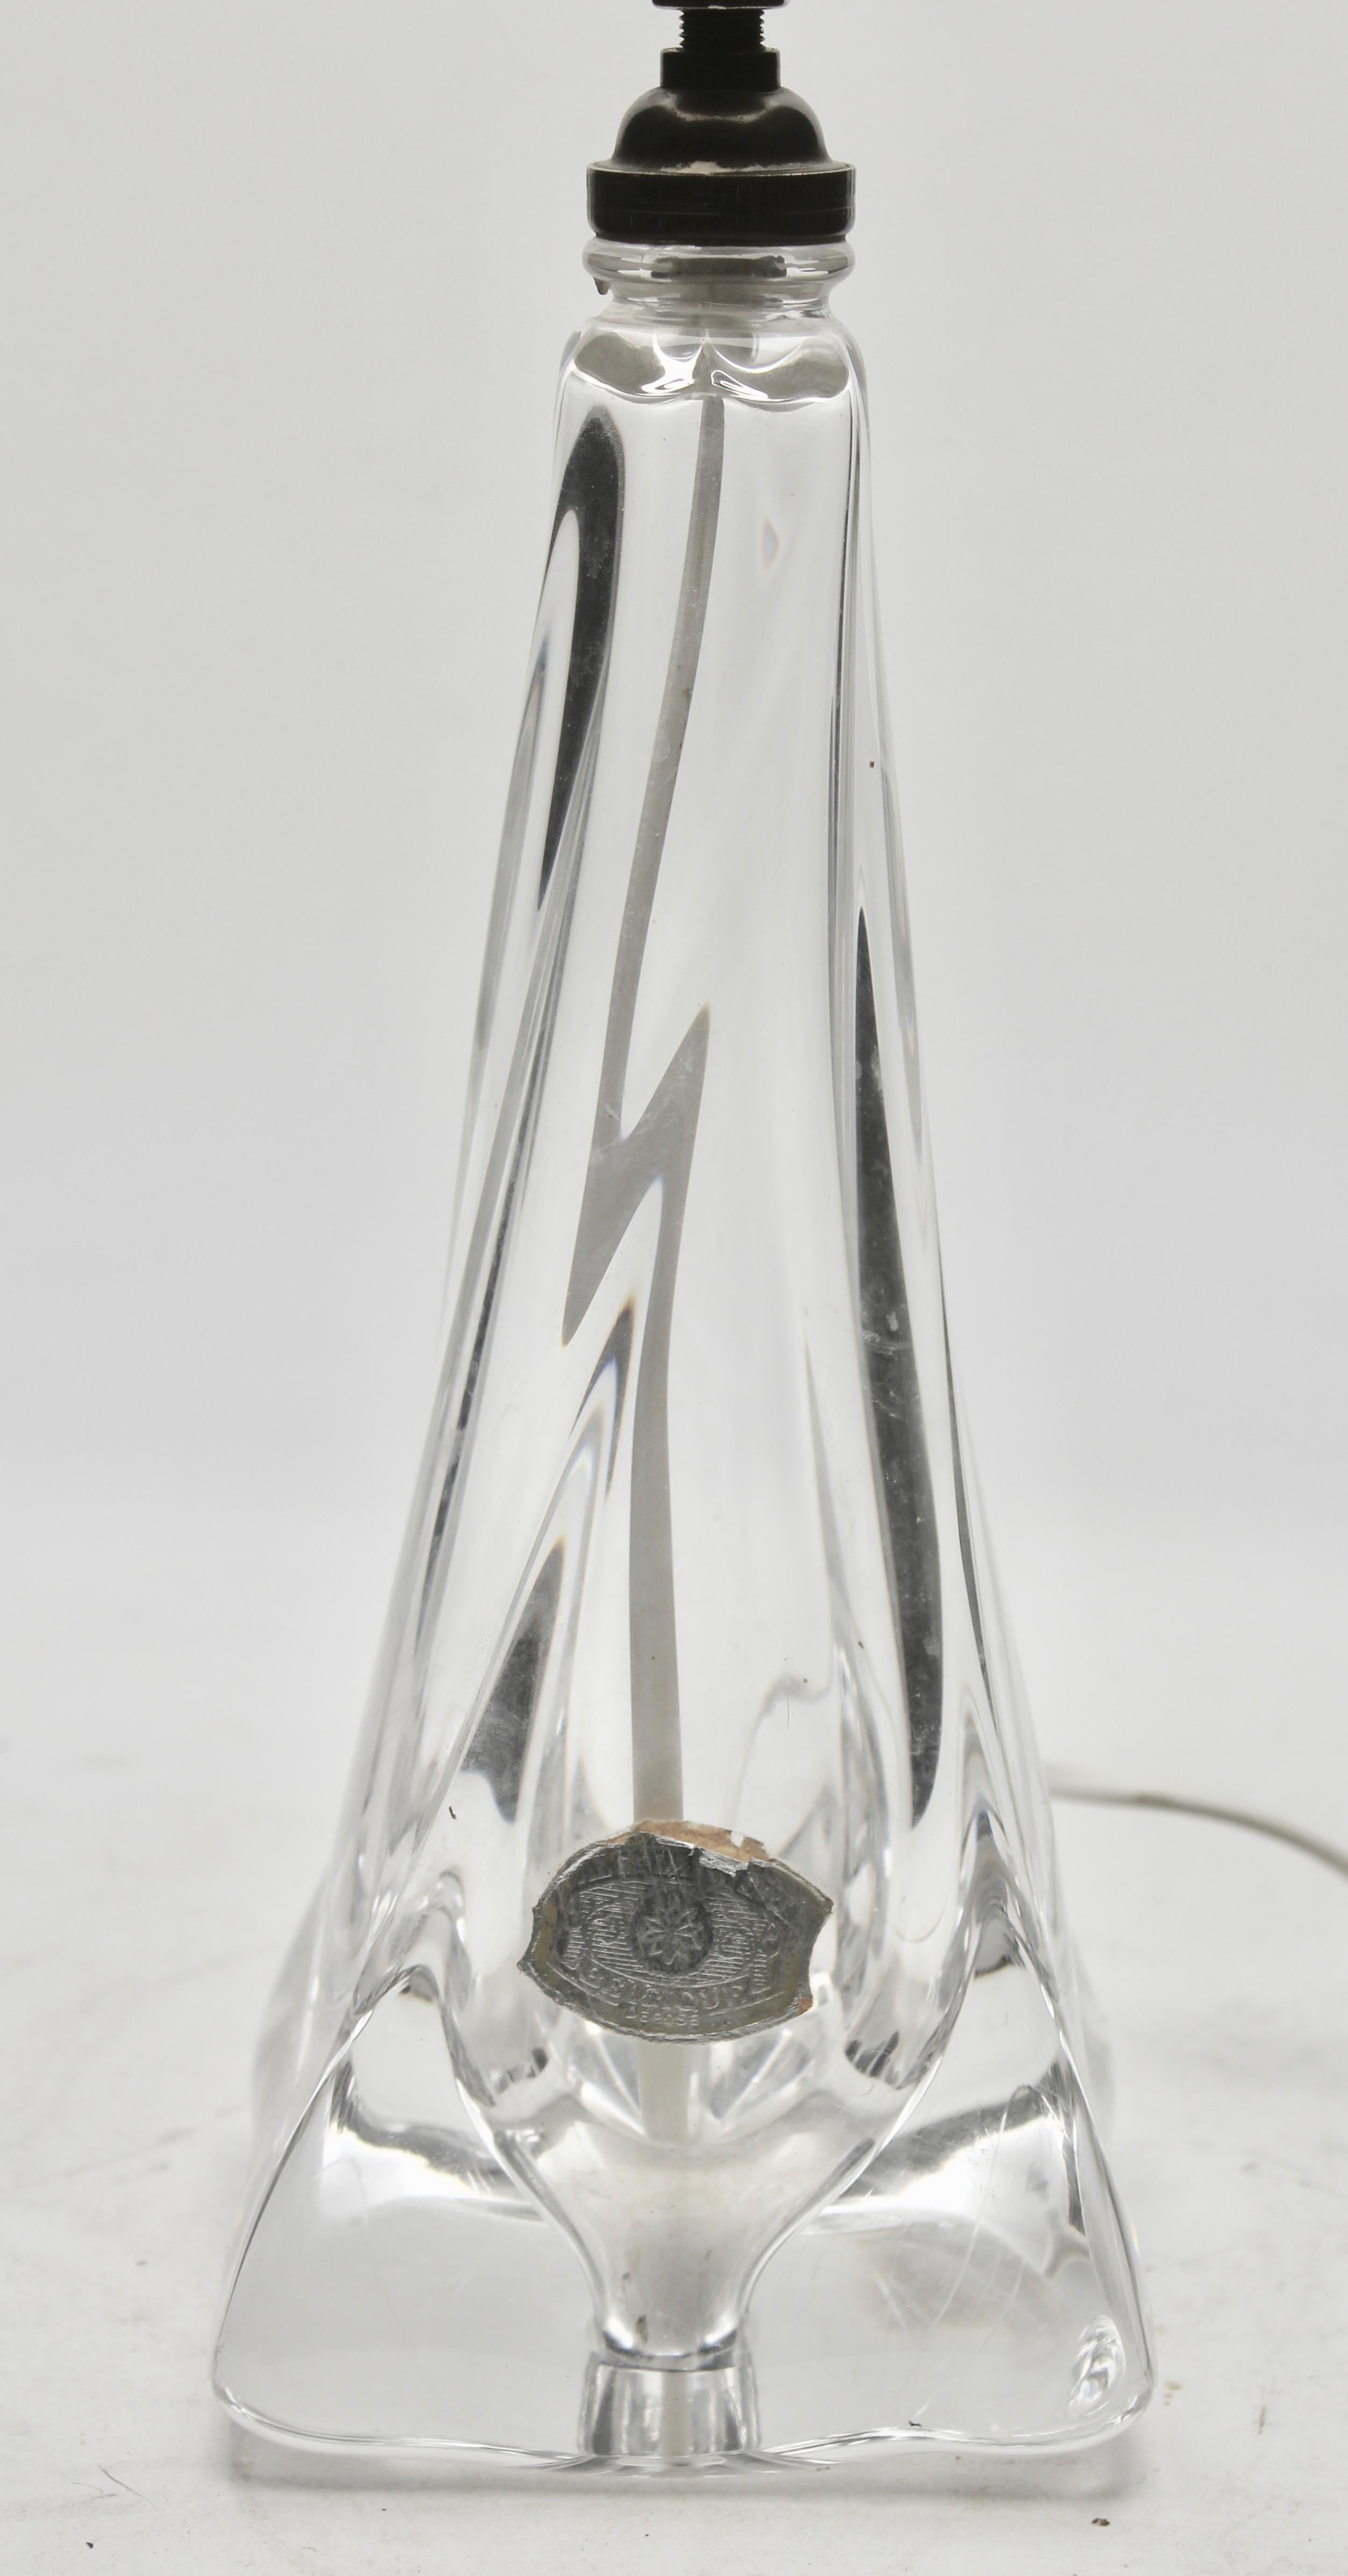 Val Saint Lambert est un fabricant belge de verres de cristal, fondé en 1826 et basé à Seraing. Elle est le fournisseur officiel de verrerie du roi Albert II. 
Val Saint Lambert et label.
Les tailles sont mesurées sans abat-jour.

Poids de la